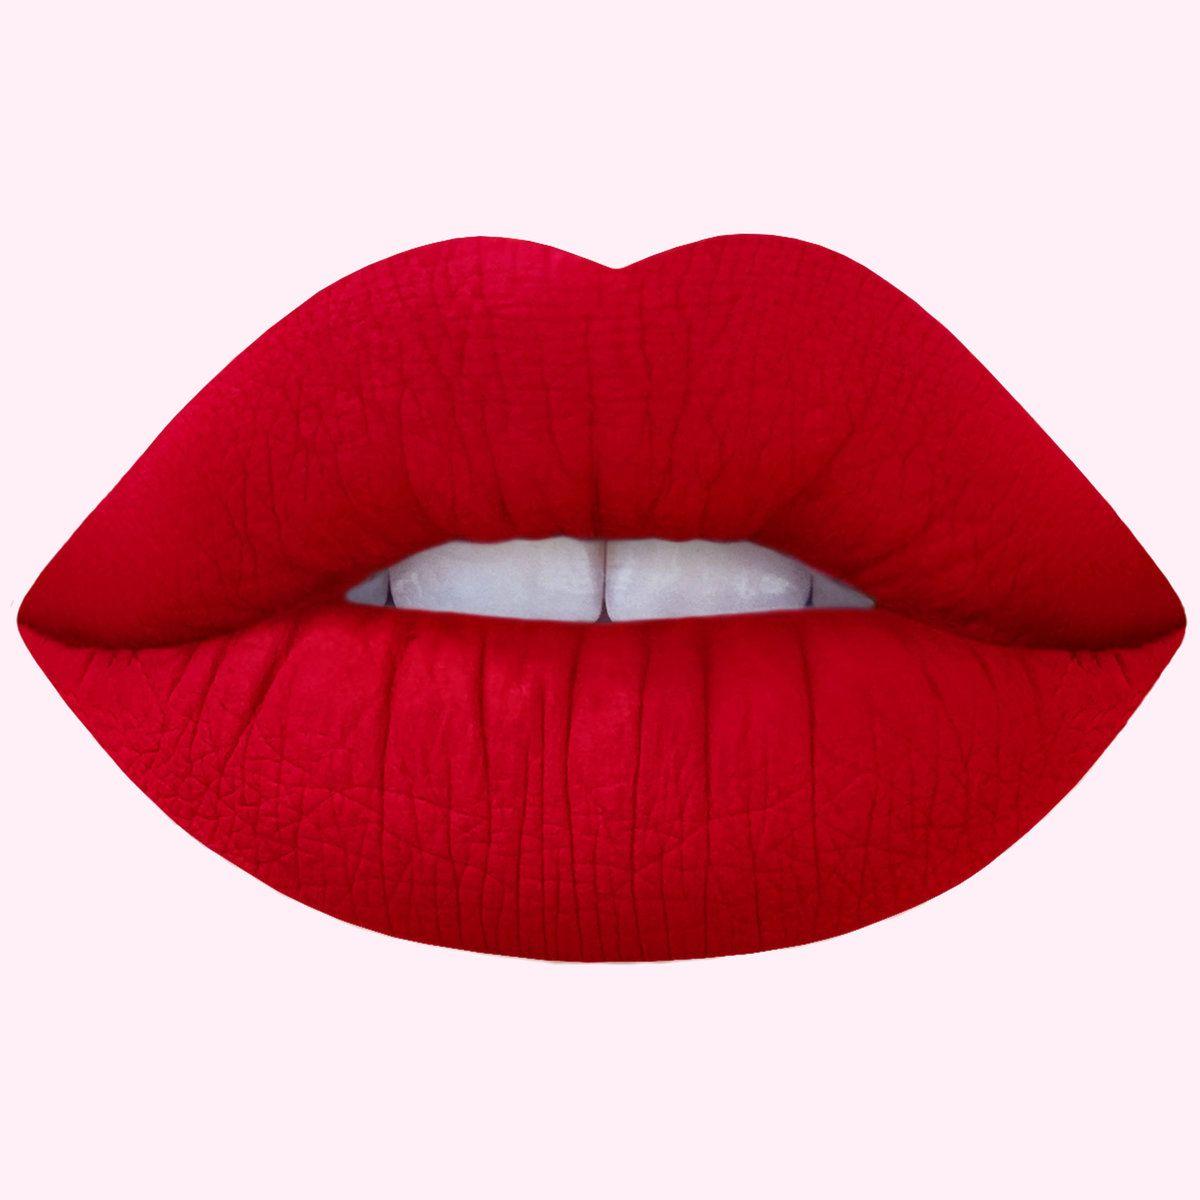 Red Lips and Mouth Logo - Red Velvet: True Red Matte Velvetines Vegan Lipstick - Lime Crime